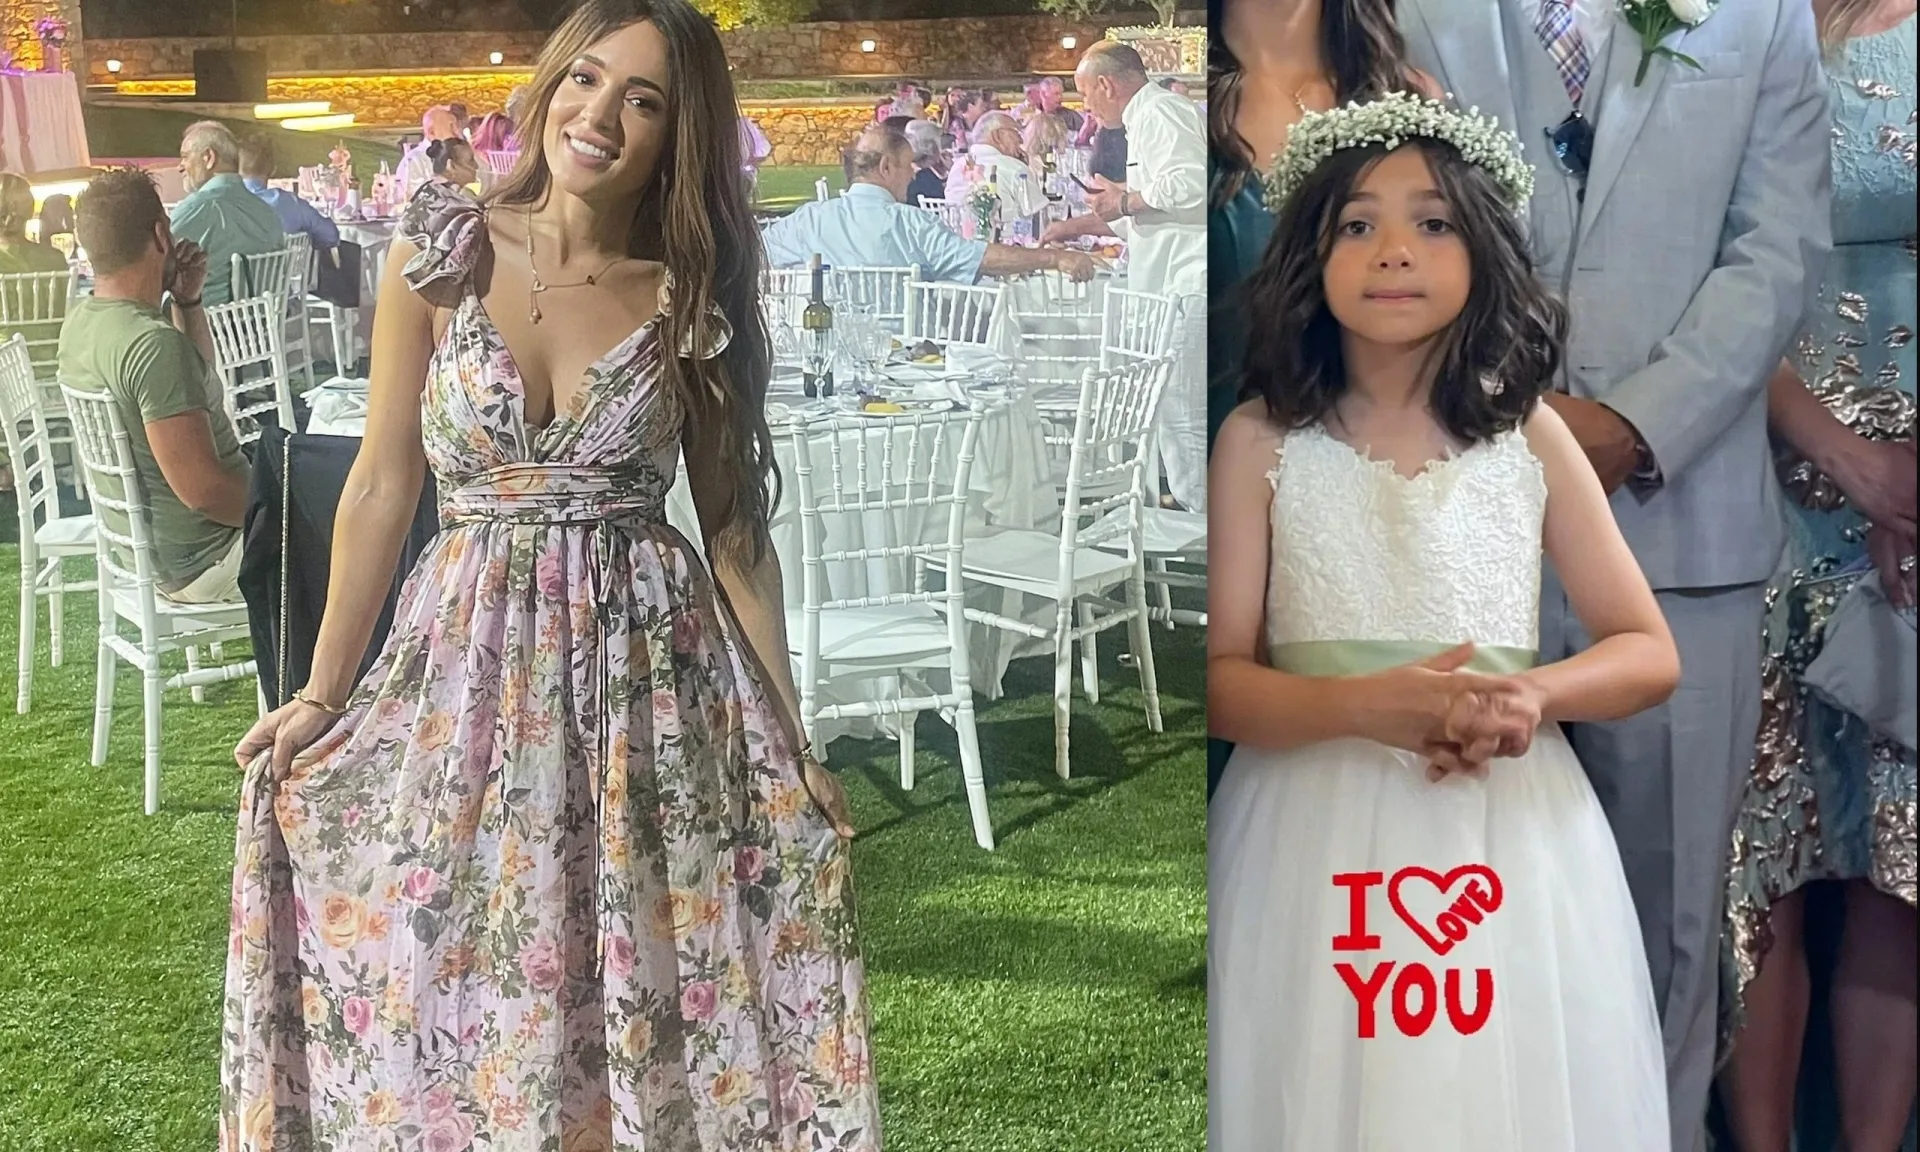 Καλομοίρα: Η κόρη της έγινε παρανυφάκι σε γάμο στη Λακωνία - Το τραγούδι & ο χορός του ζευγαριού